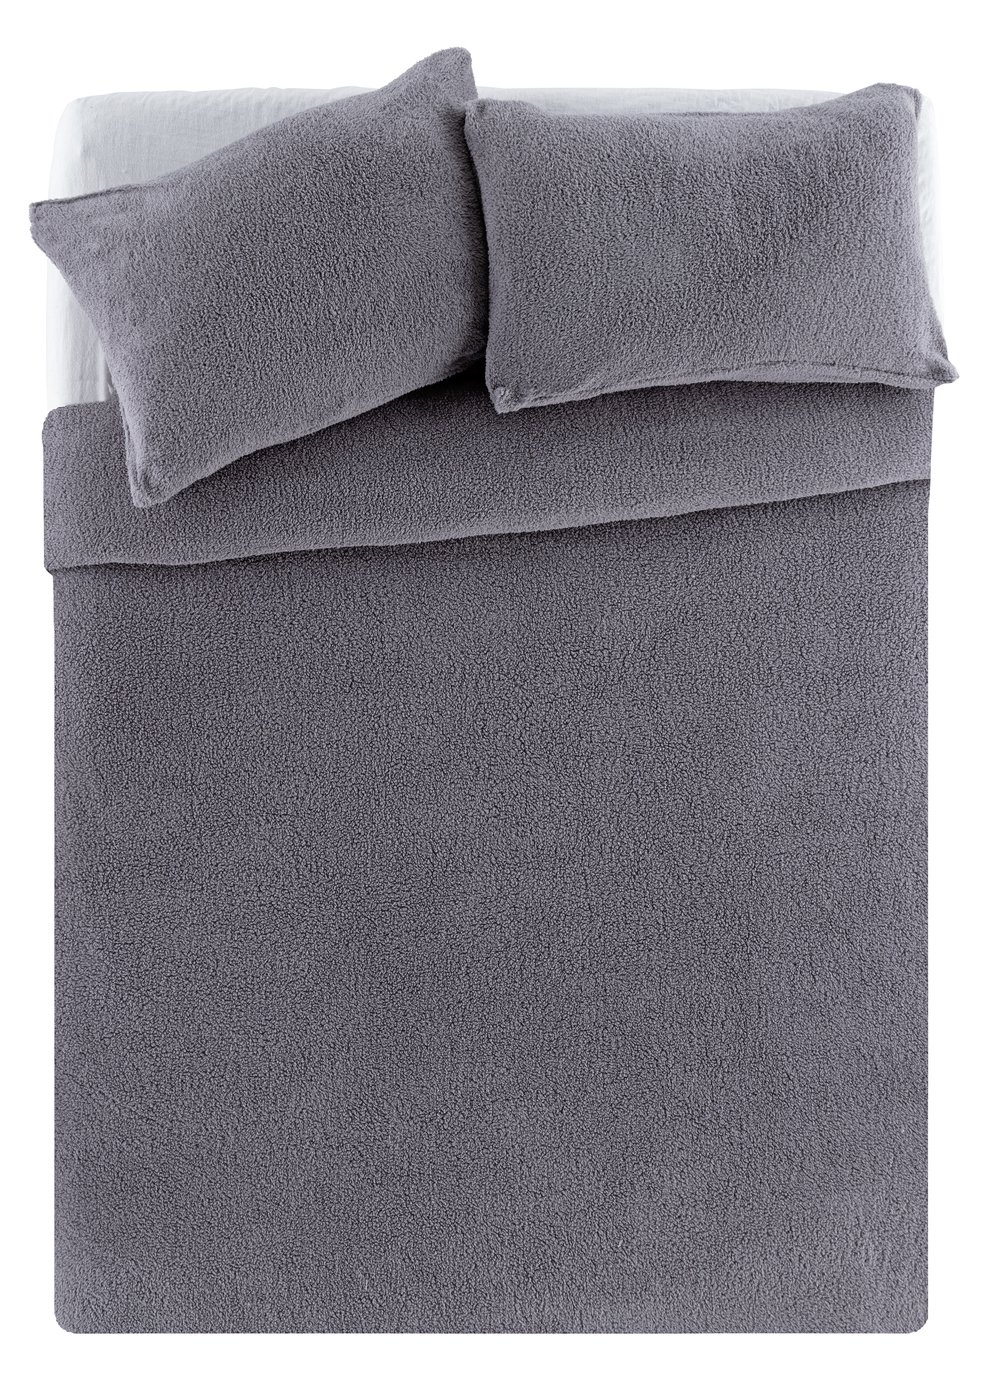 Argos Home Grey Fleece Bedding Set - Kingsize